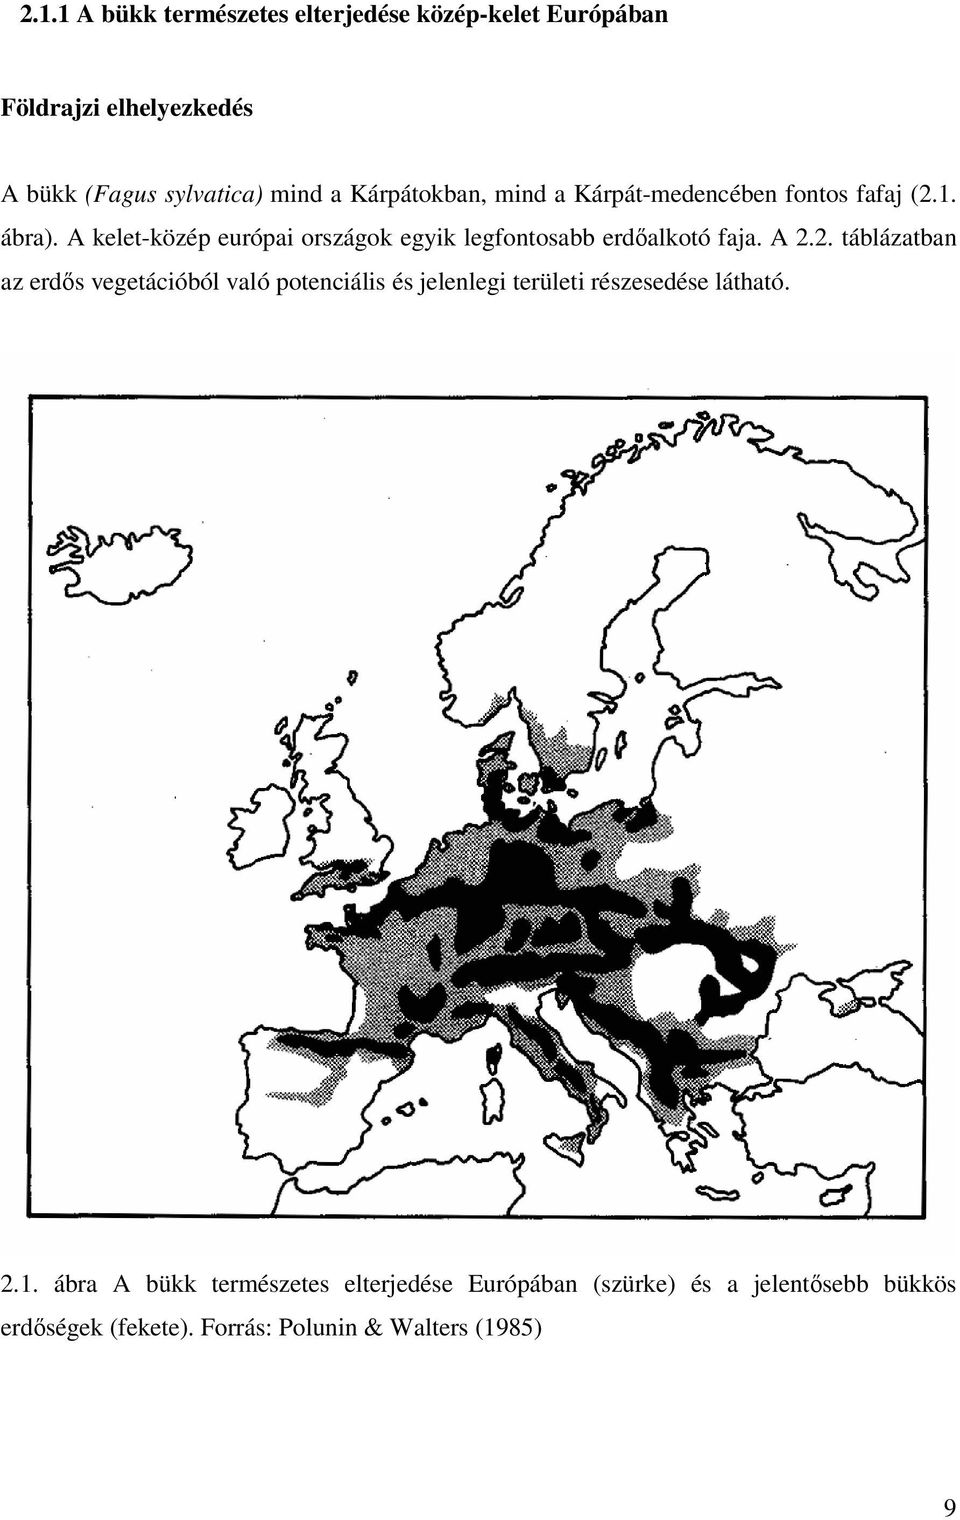 A kelet-közép európai országok egyik legfontosabb erdıalkotó faja. A 2.